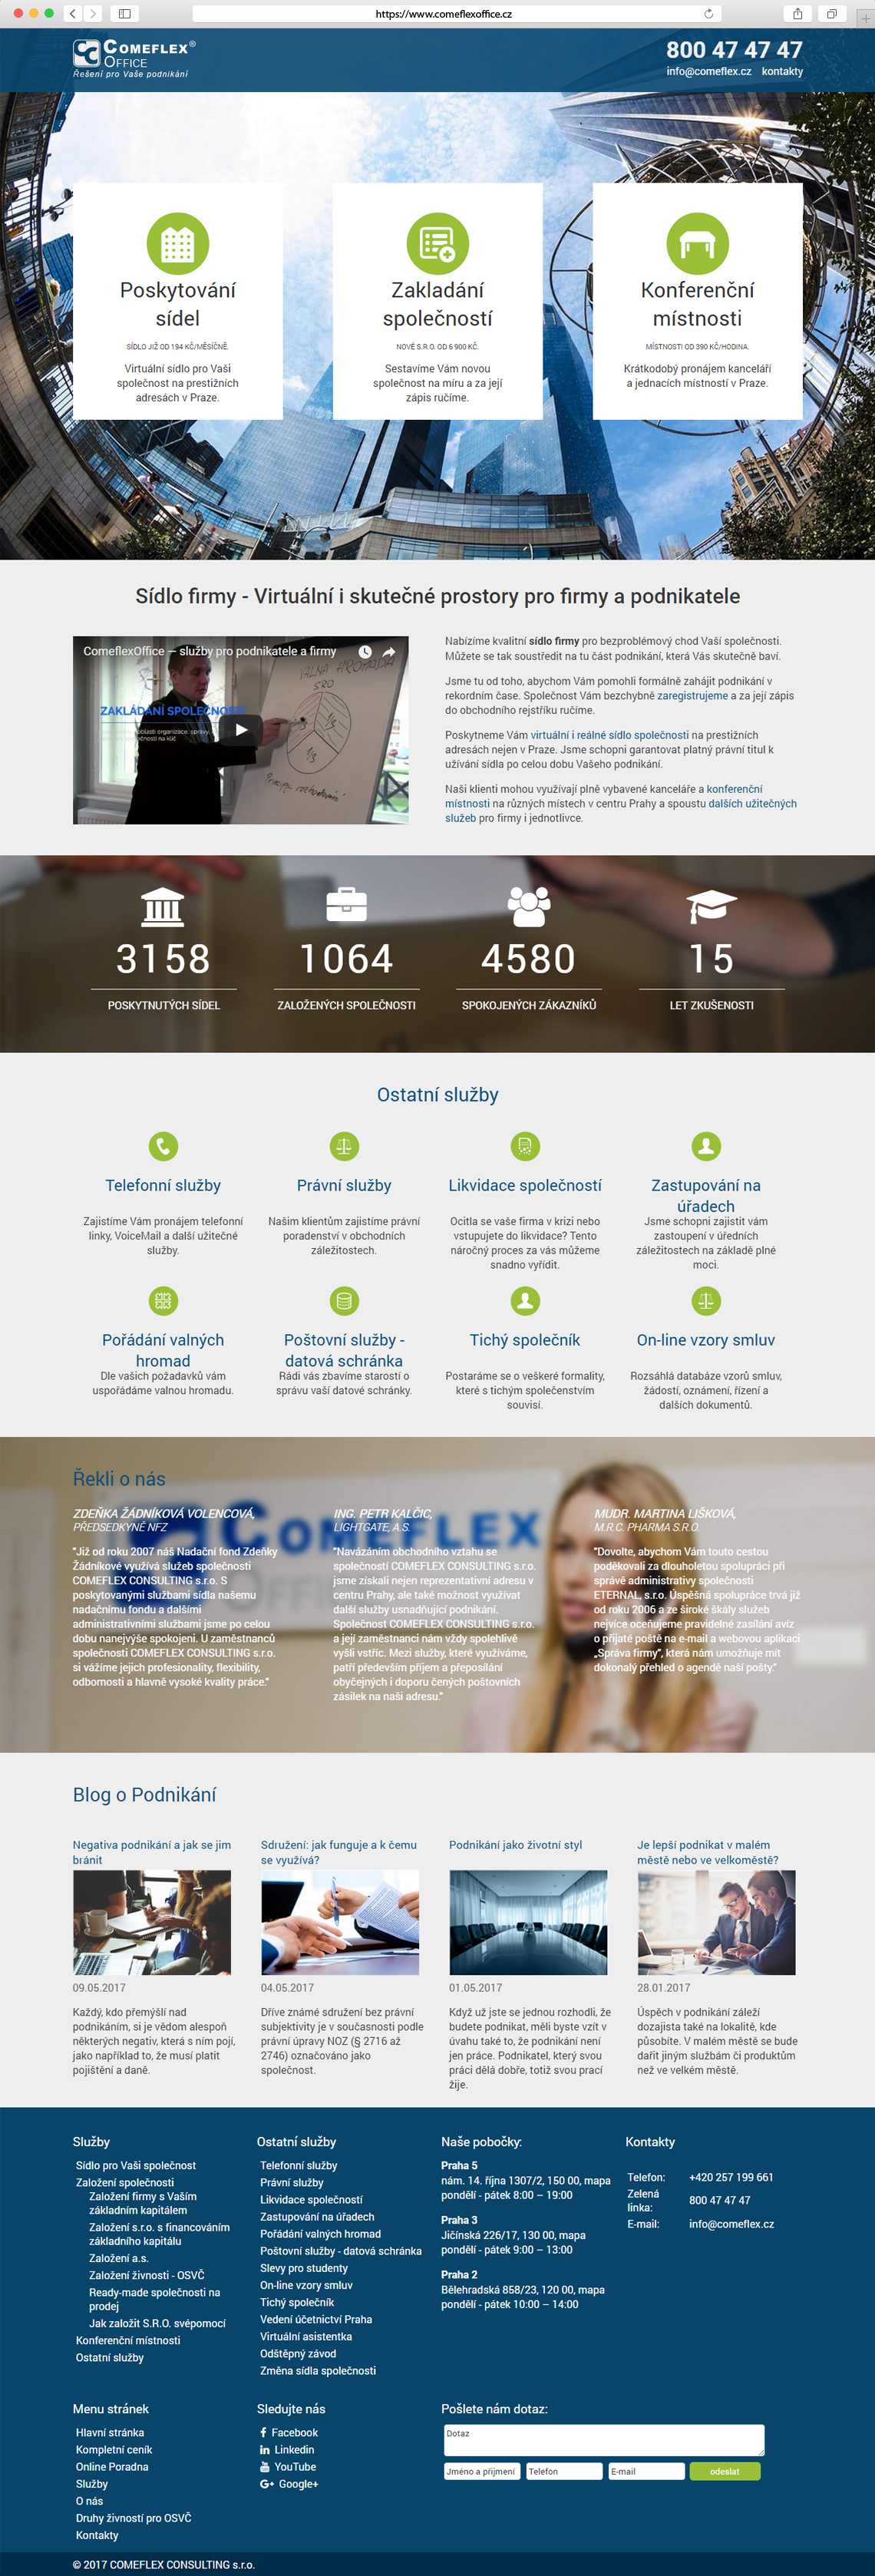 Homepage www.comeflexoffice.cz